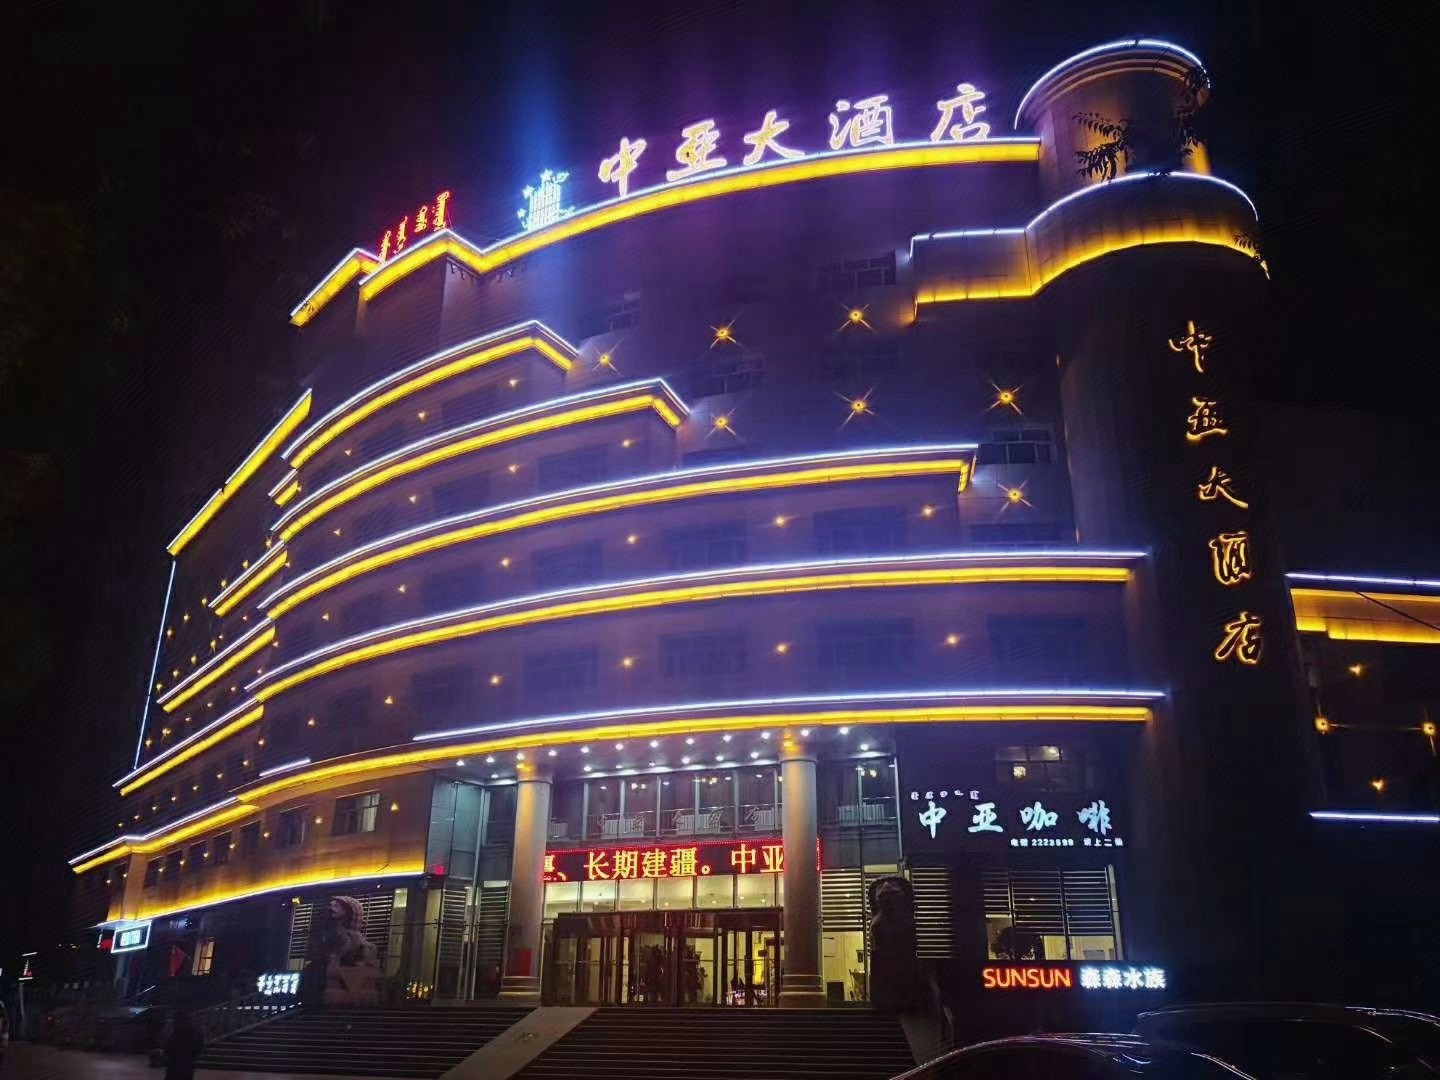 中亚国际大酒店地址-图库-五毛网